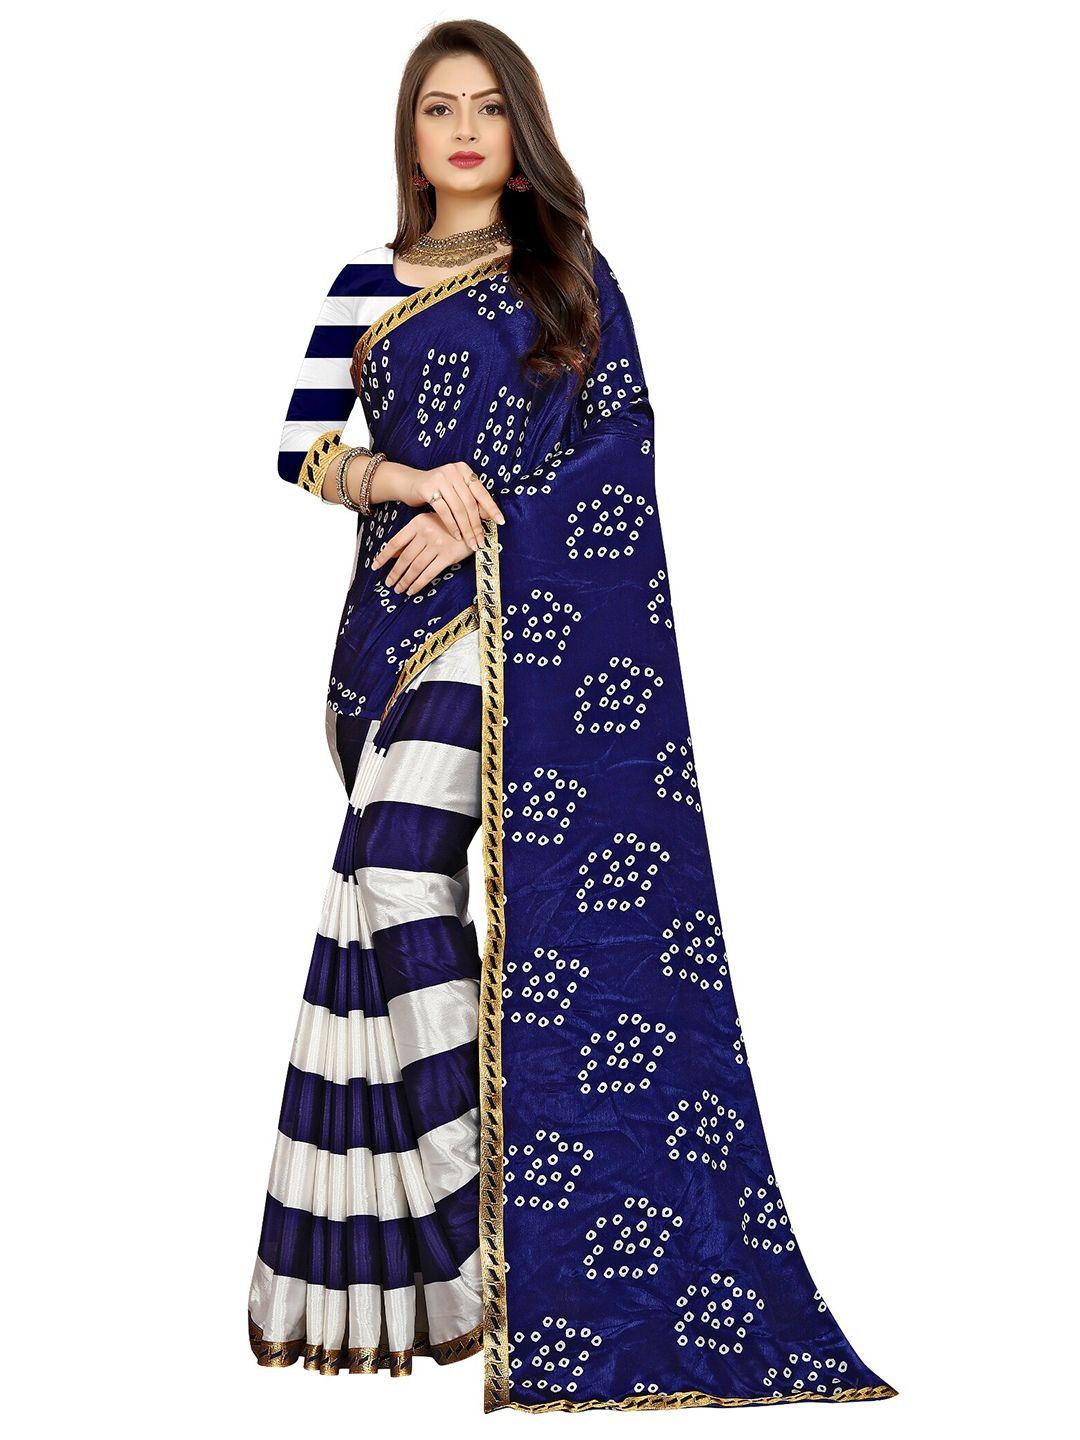 laheja navy blue & white bandhani printed saree